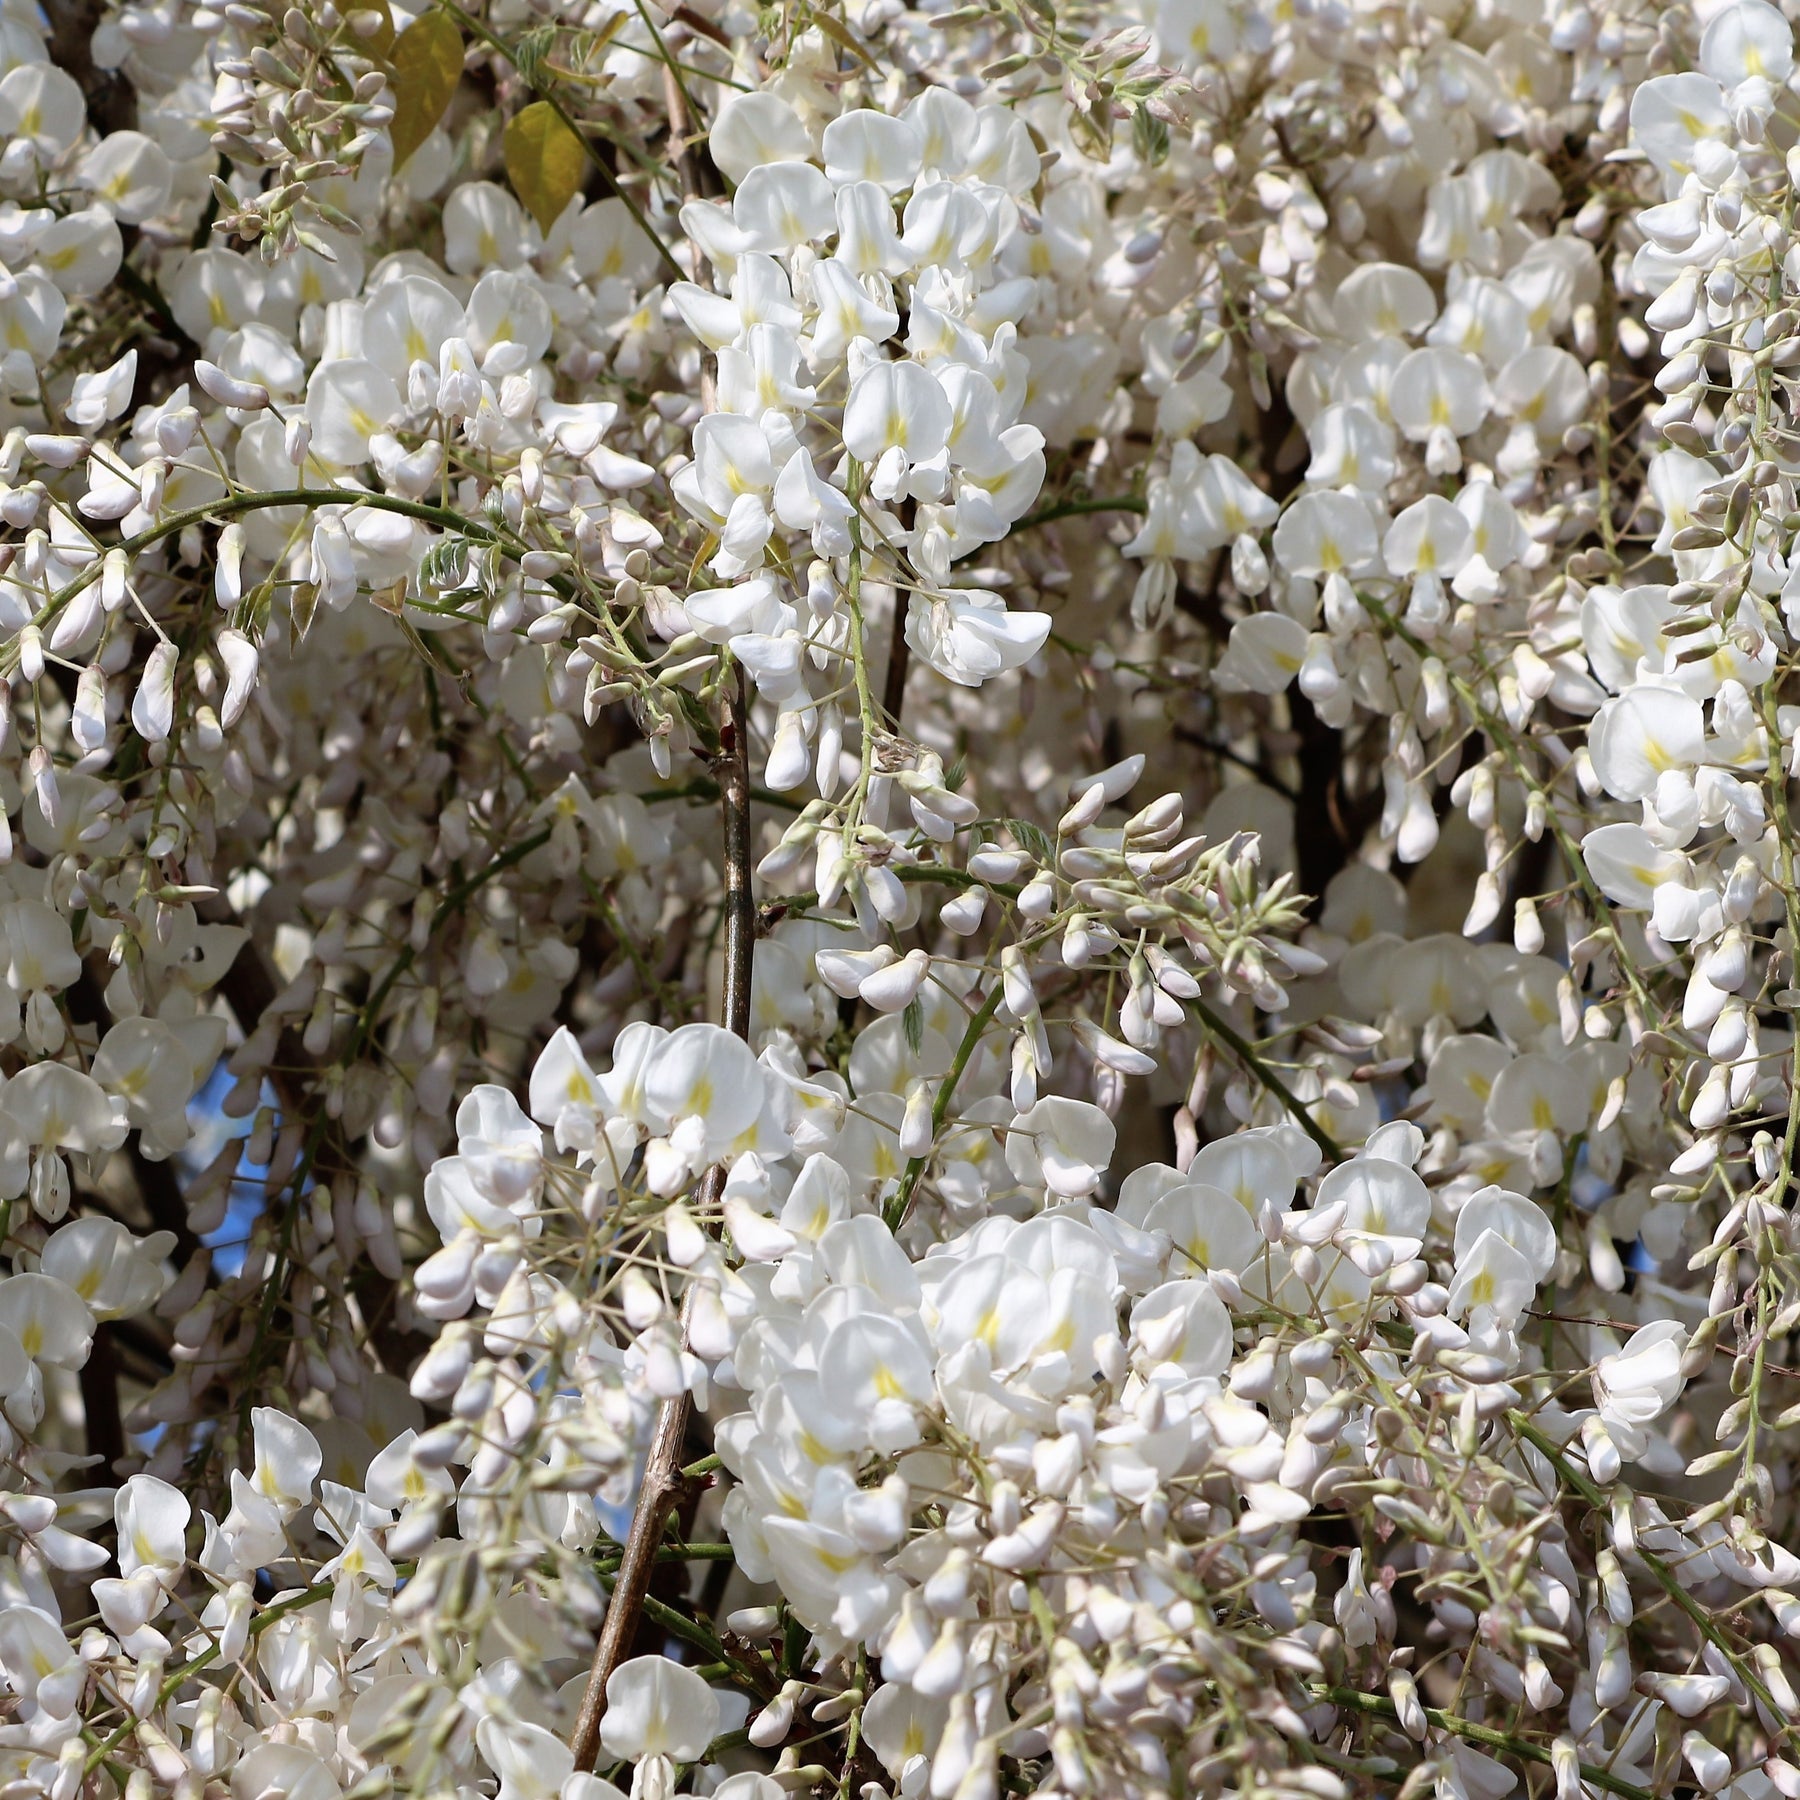 Glycine blanche - Wisteria sinensis alba